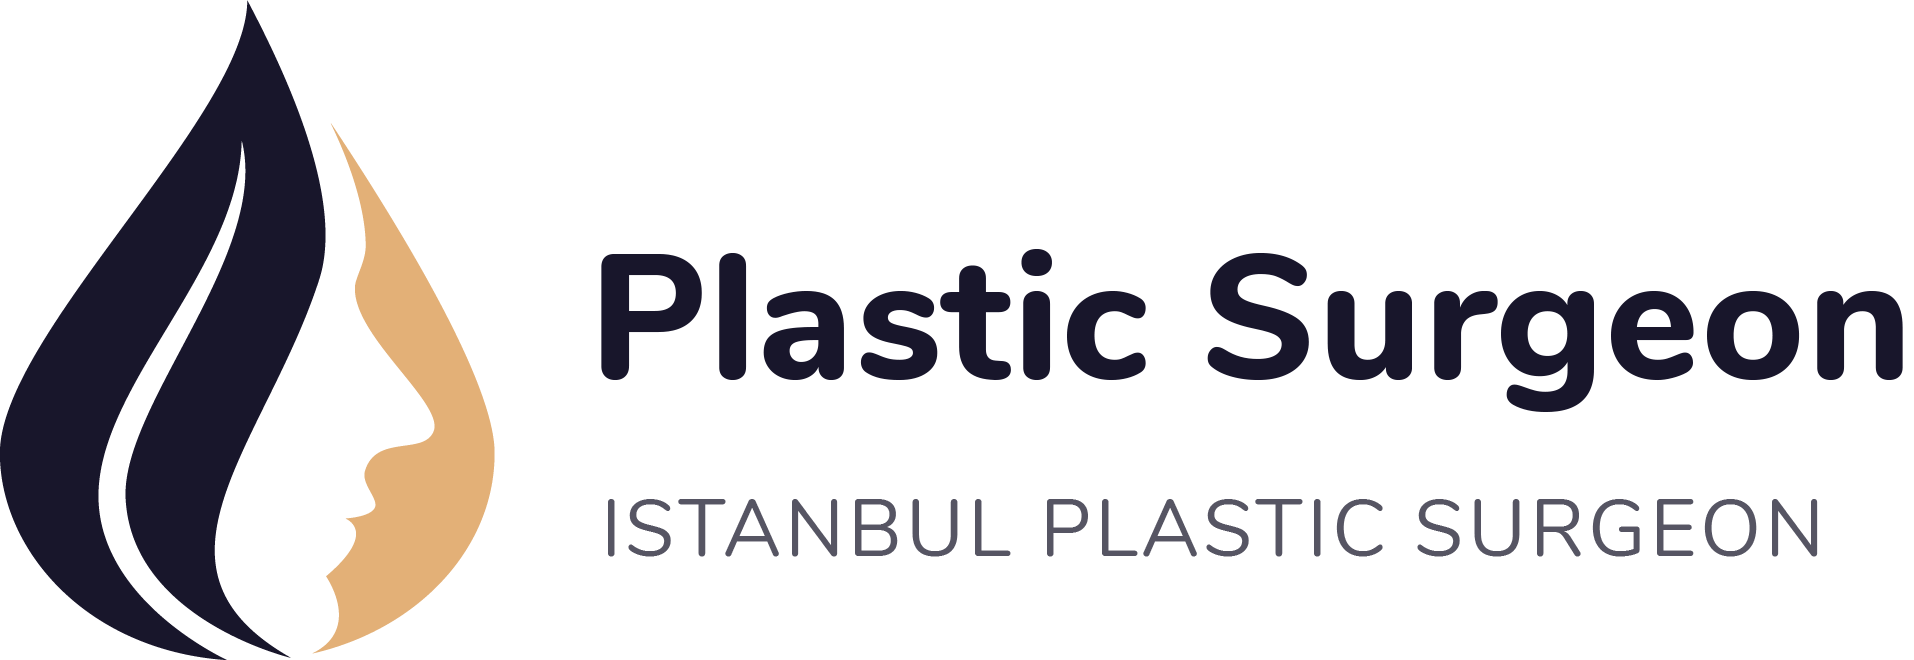 logo istanbulplasticsurgeon